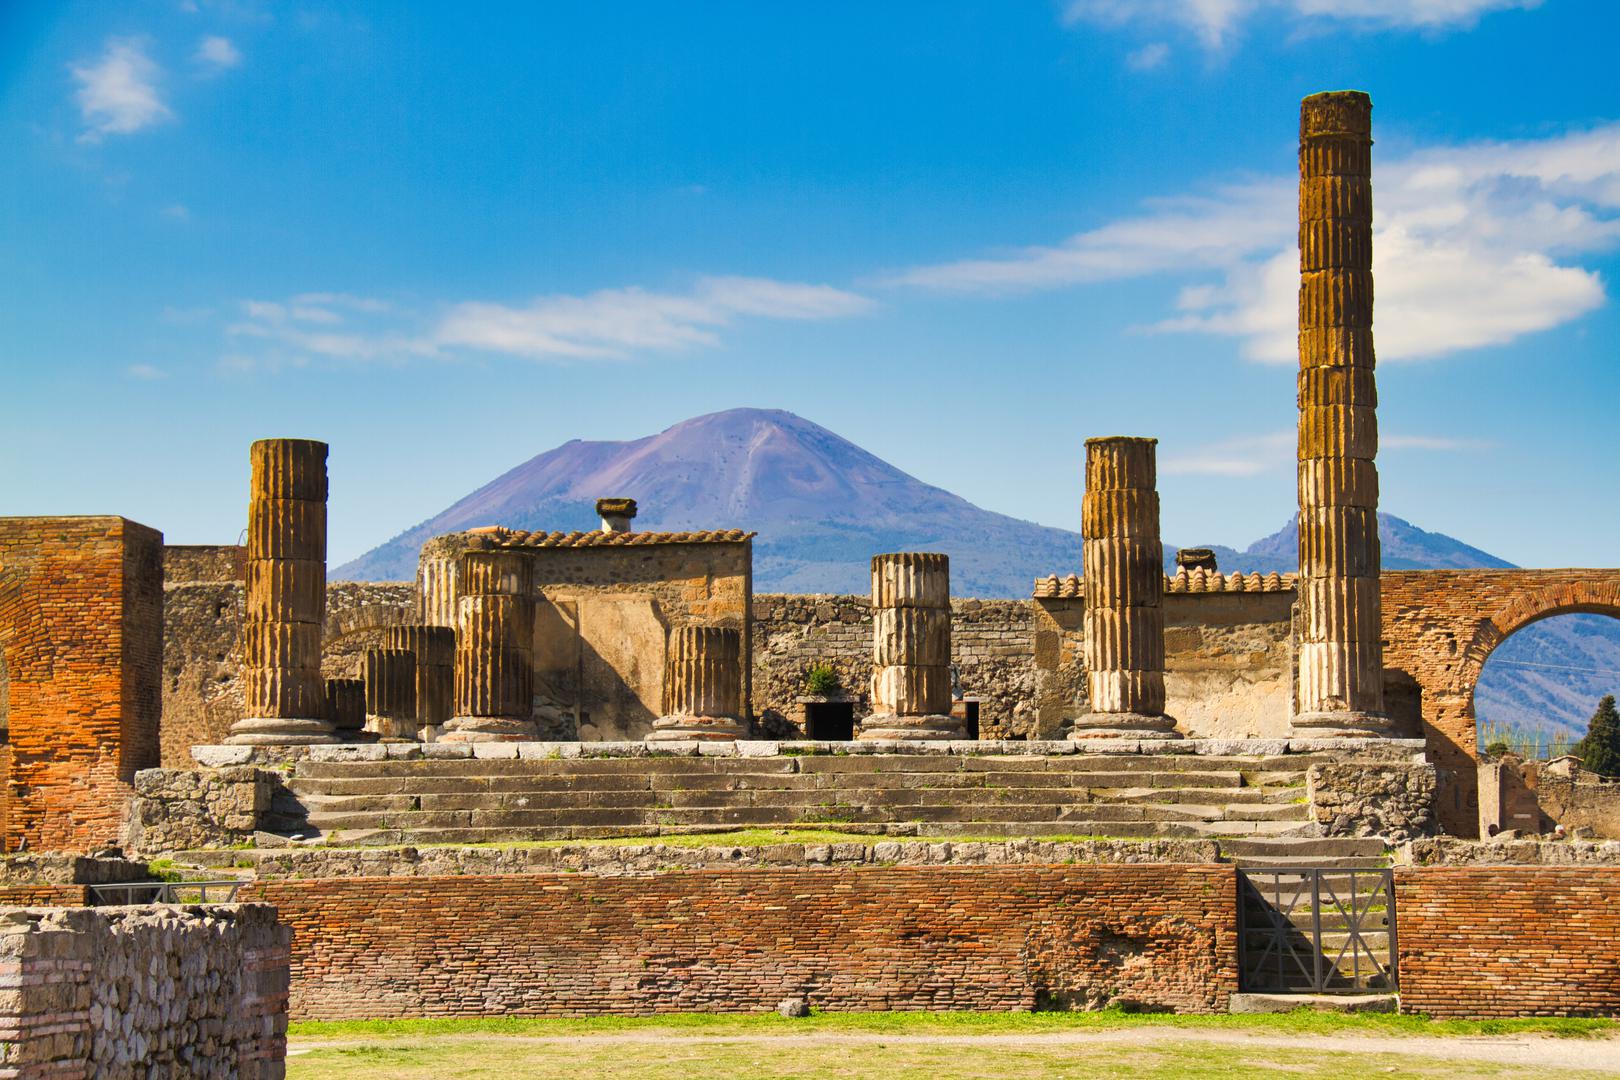 5. Pompeji su ponovno otkriveni u 18. stoljeću: Godine 79. nove ere, kada je vulkan Vezuv eruptirao prvi put u 1800 godina, potpuno je iznenadio stanovnike Pompeja. Grad i njegovi ljudi bili su zatrpani ispod 5 metara pepela dok su obavljali svoje svakodnevne poslove, stvarajući prirodnu vremensku kapsulu za buduće generacije da zavire u život starog Rima. Prvo iskapanje započelo je 1748. što je pomoglo pokrenuti eru neoklasizma u 18. stoljeću koja je tražila utjecaj od starog Rima. Otprilike 2,5 milijuna turista svake godine posjeti Pompeje i to je jedan od vrhunaca odmora u Sorrentu.